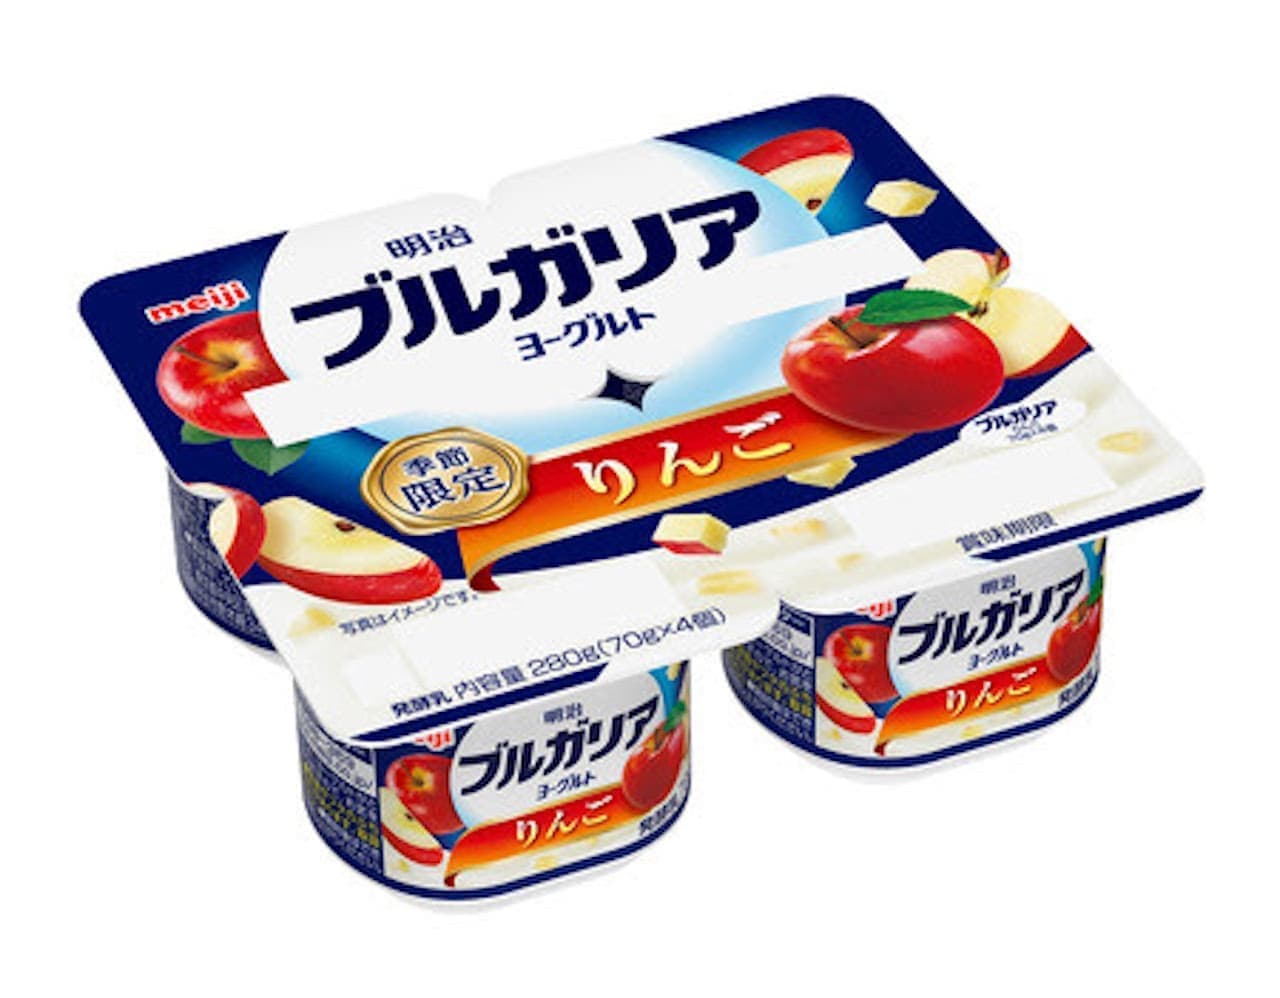 Meiji Bulgaria Yogurt Apple" launched on October 23. 